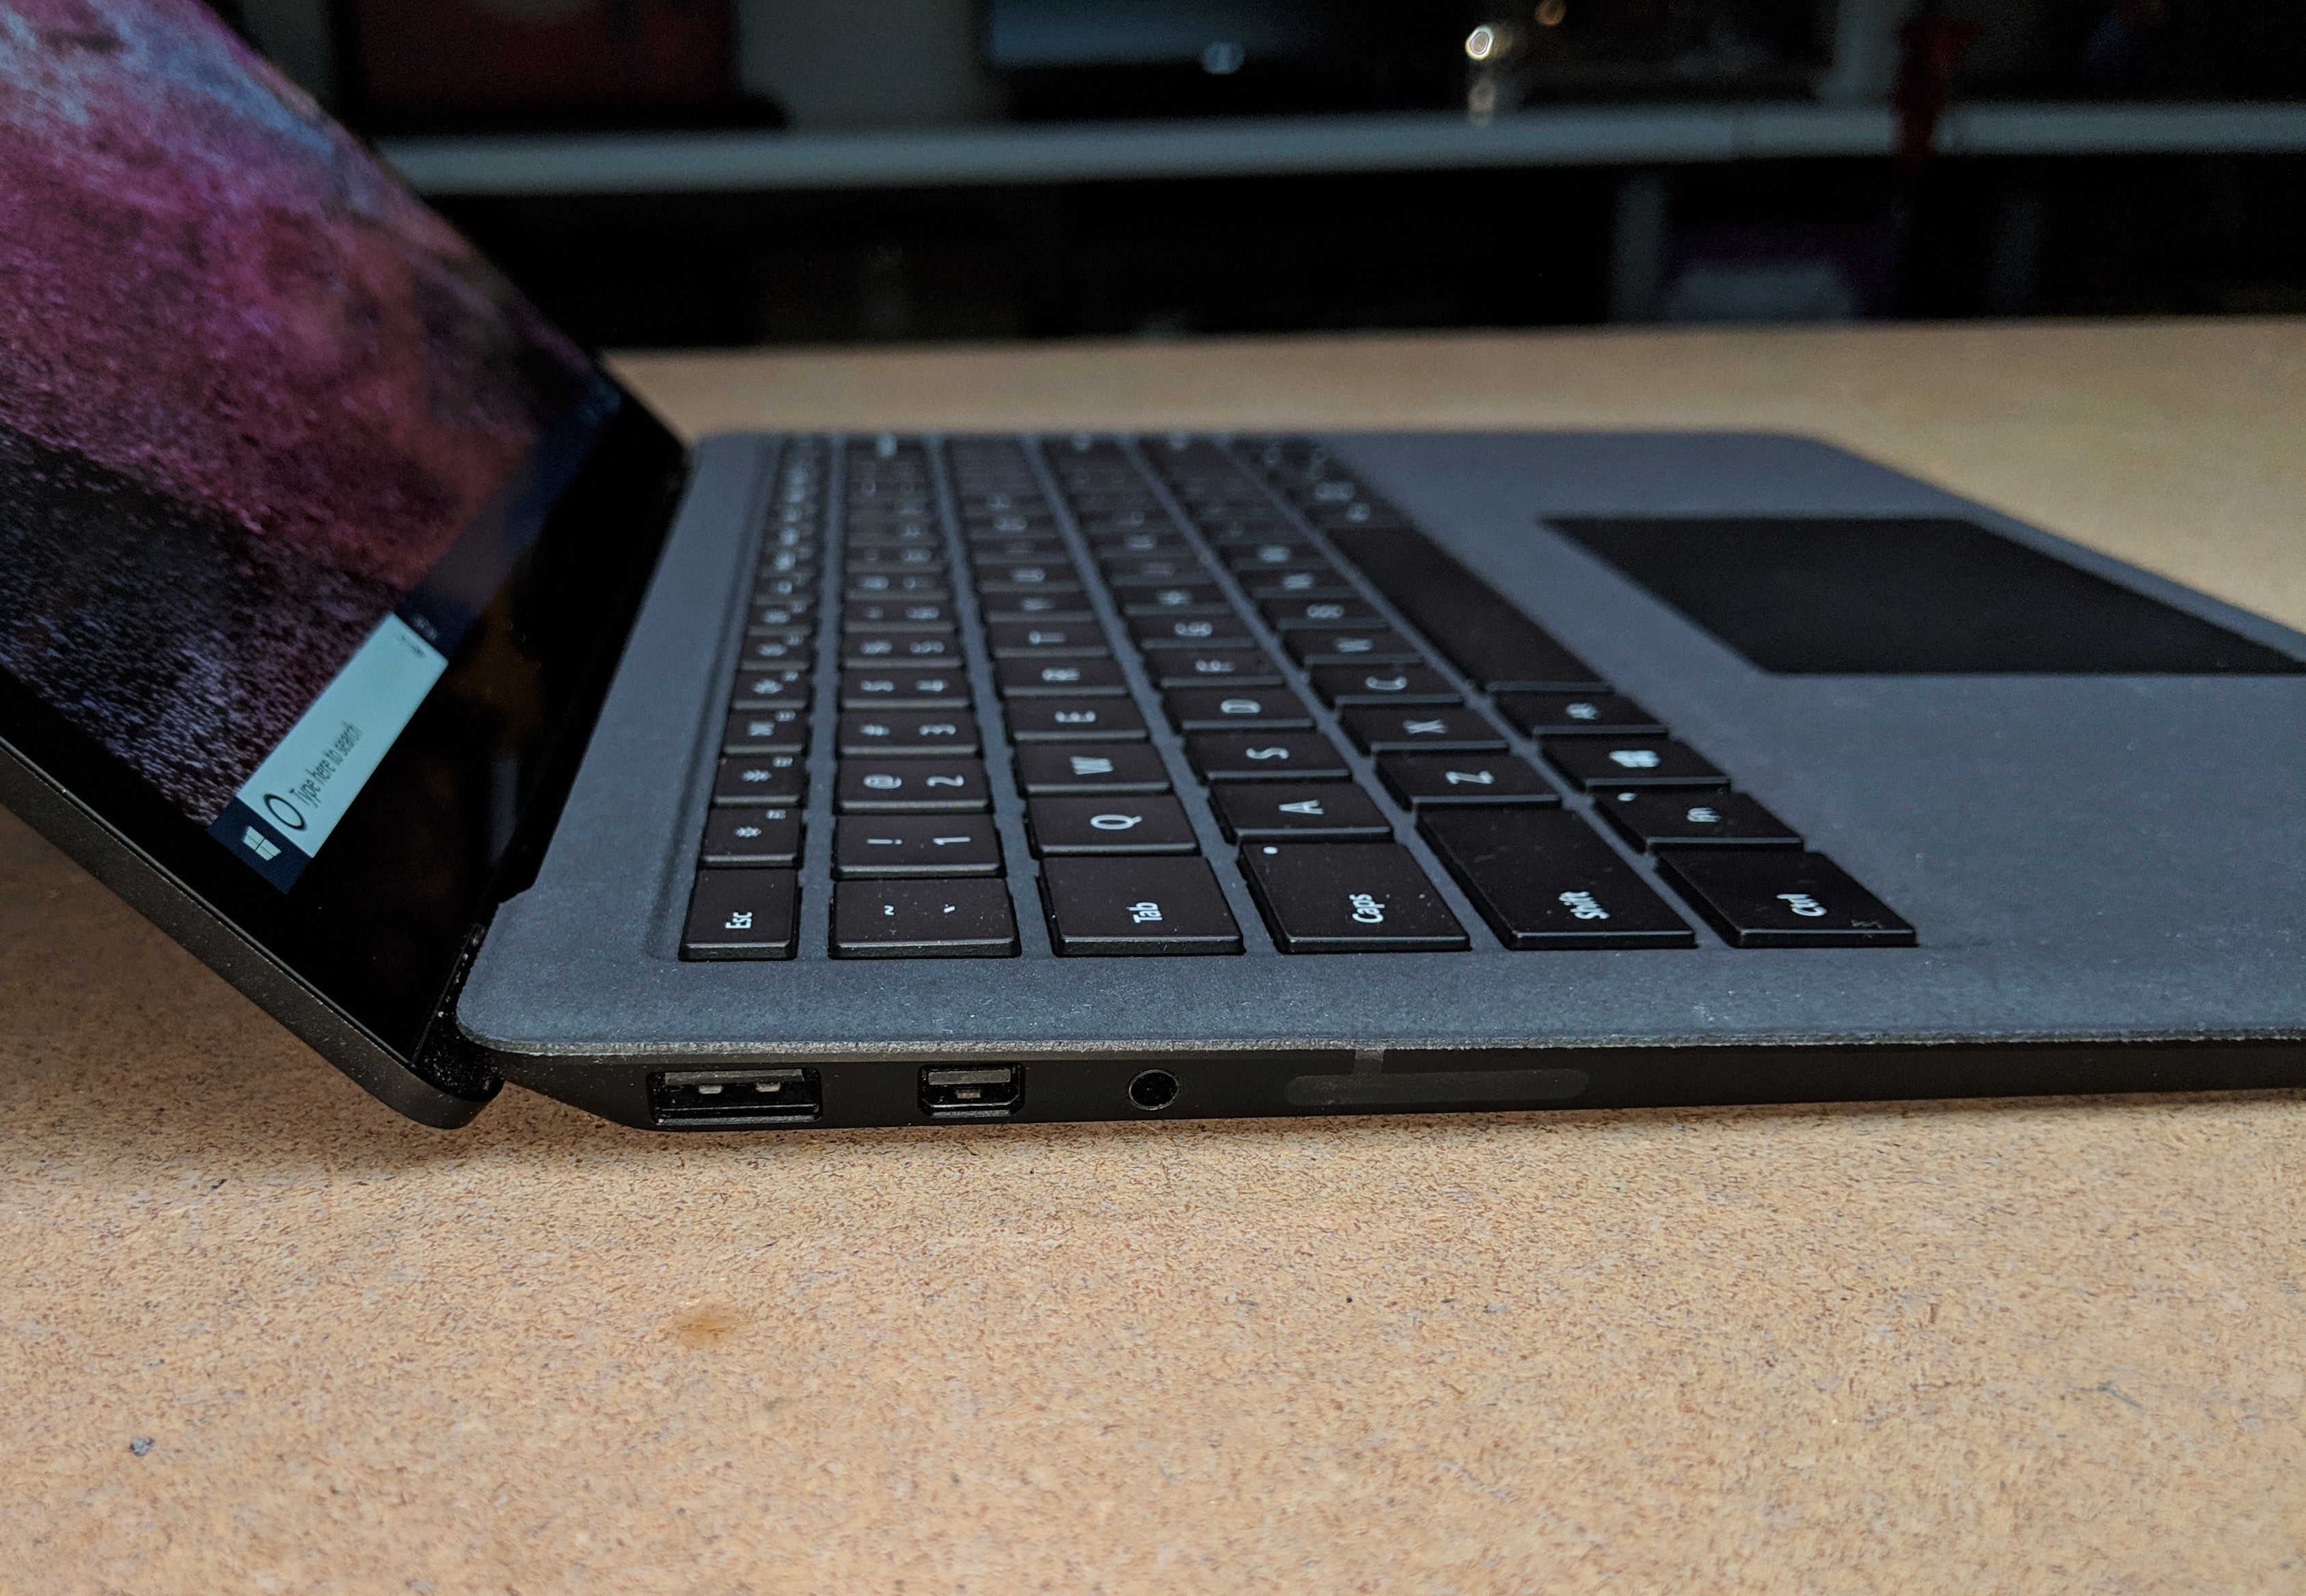 surface laptop 4 specs